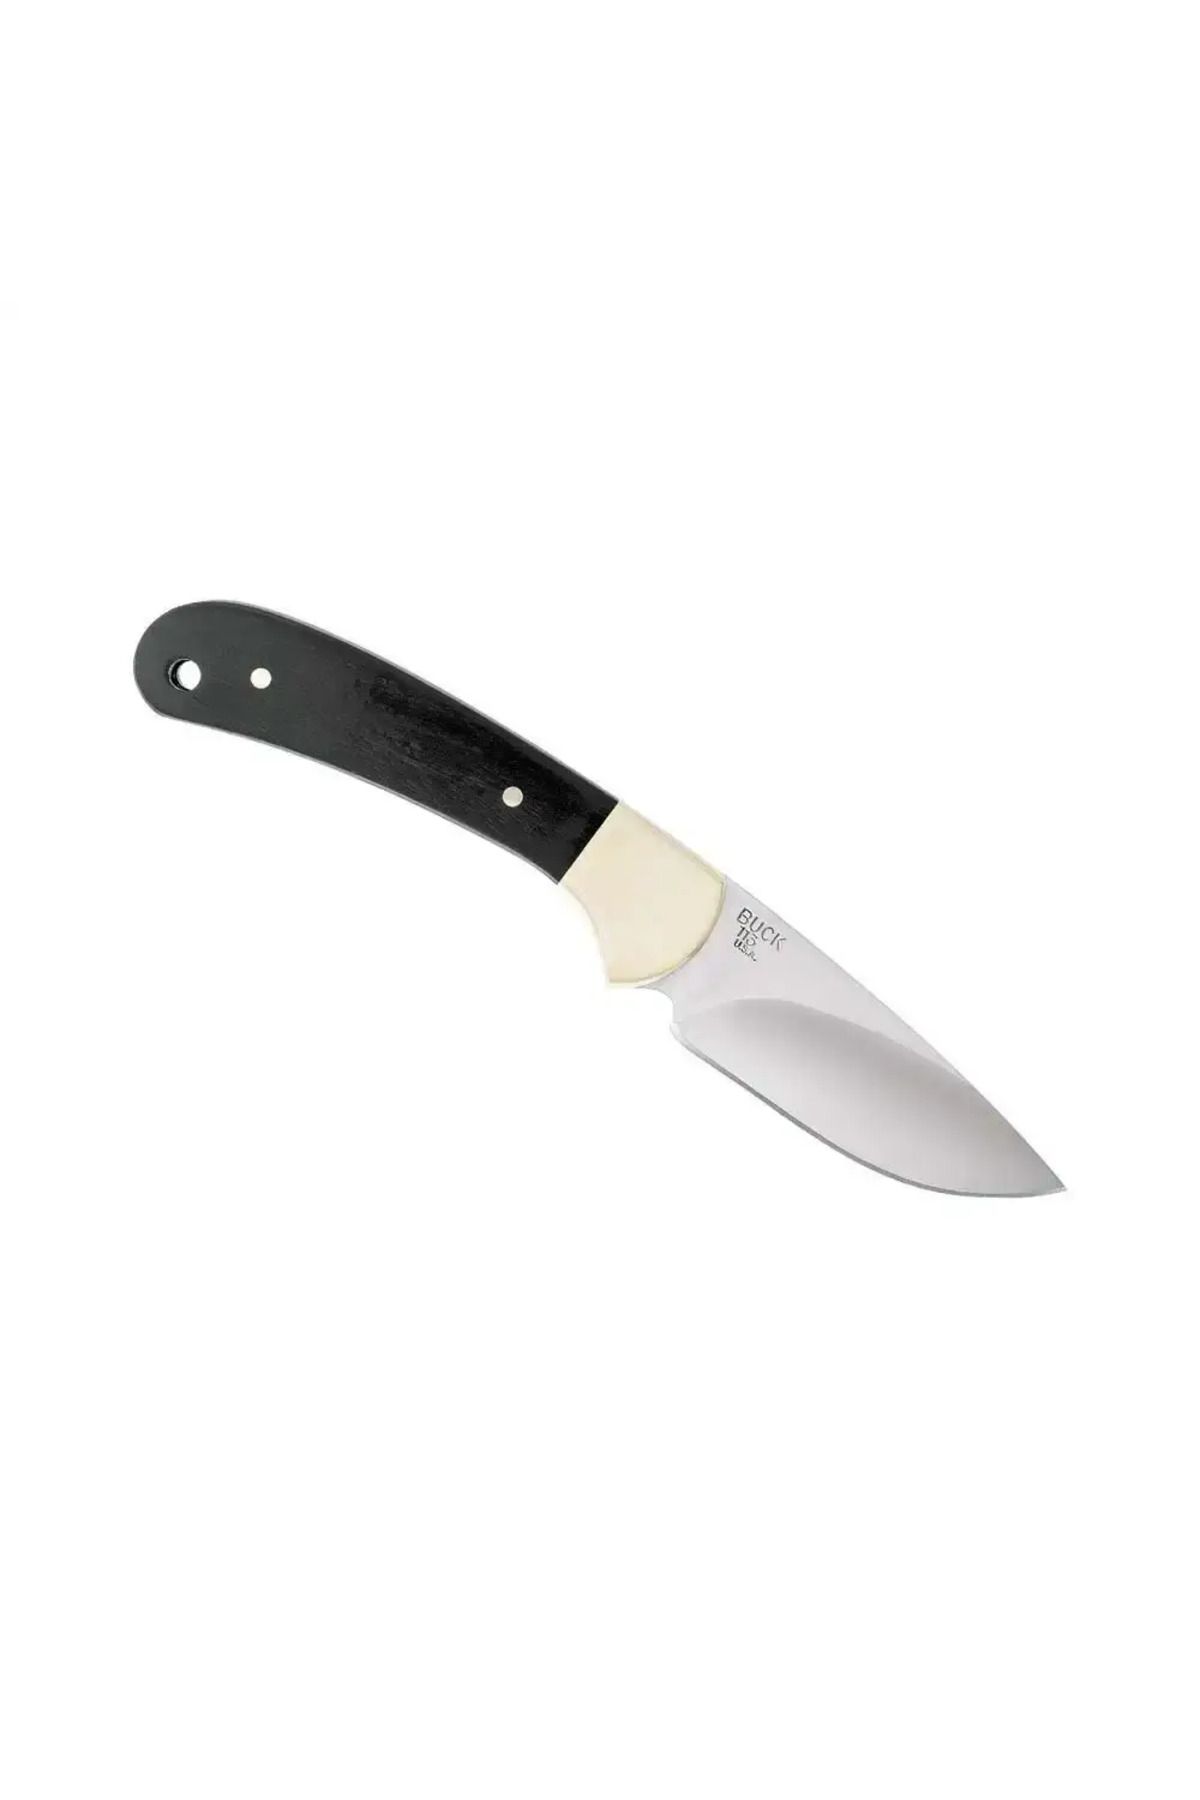 Buck 113 Slim Skinner Ağaç Saplı Yüzme Bıçağı, Blister